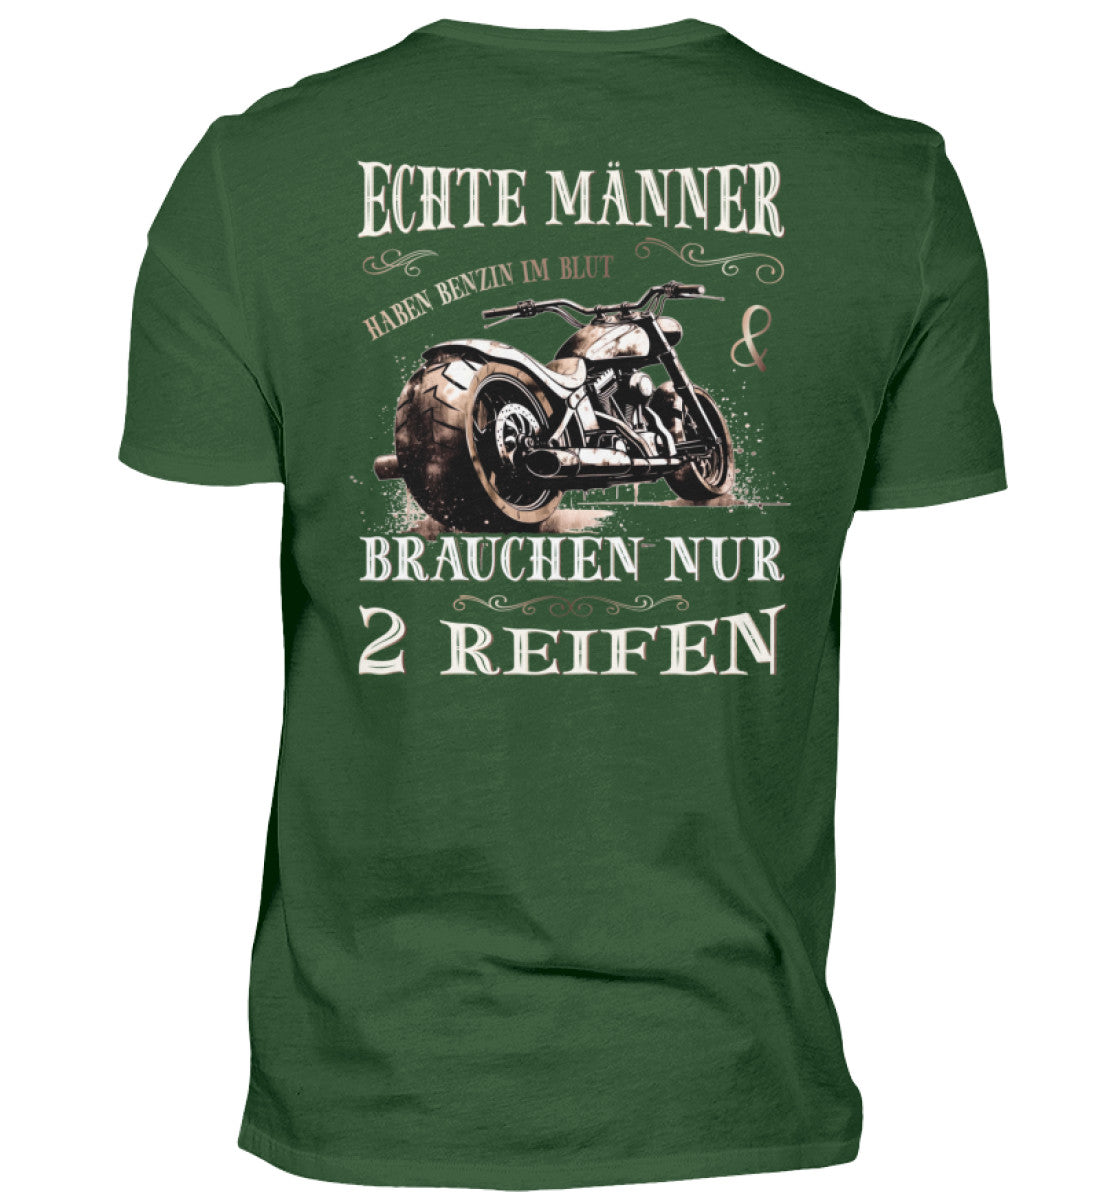 Ein T-Shirt für Motorradfahrer von Wingbikers mit dem Aufdruck, Echte Männer brauchen nur 2 Reifen, als Back Print, in dunkelgrün.